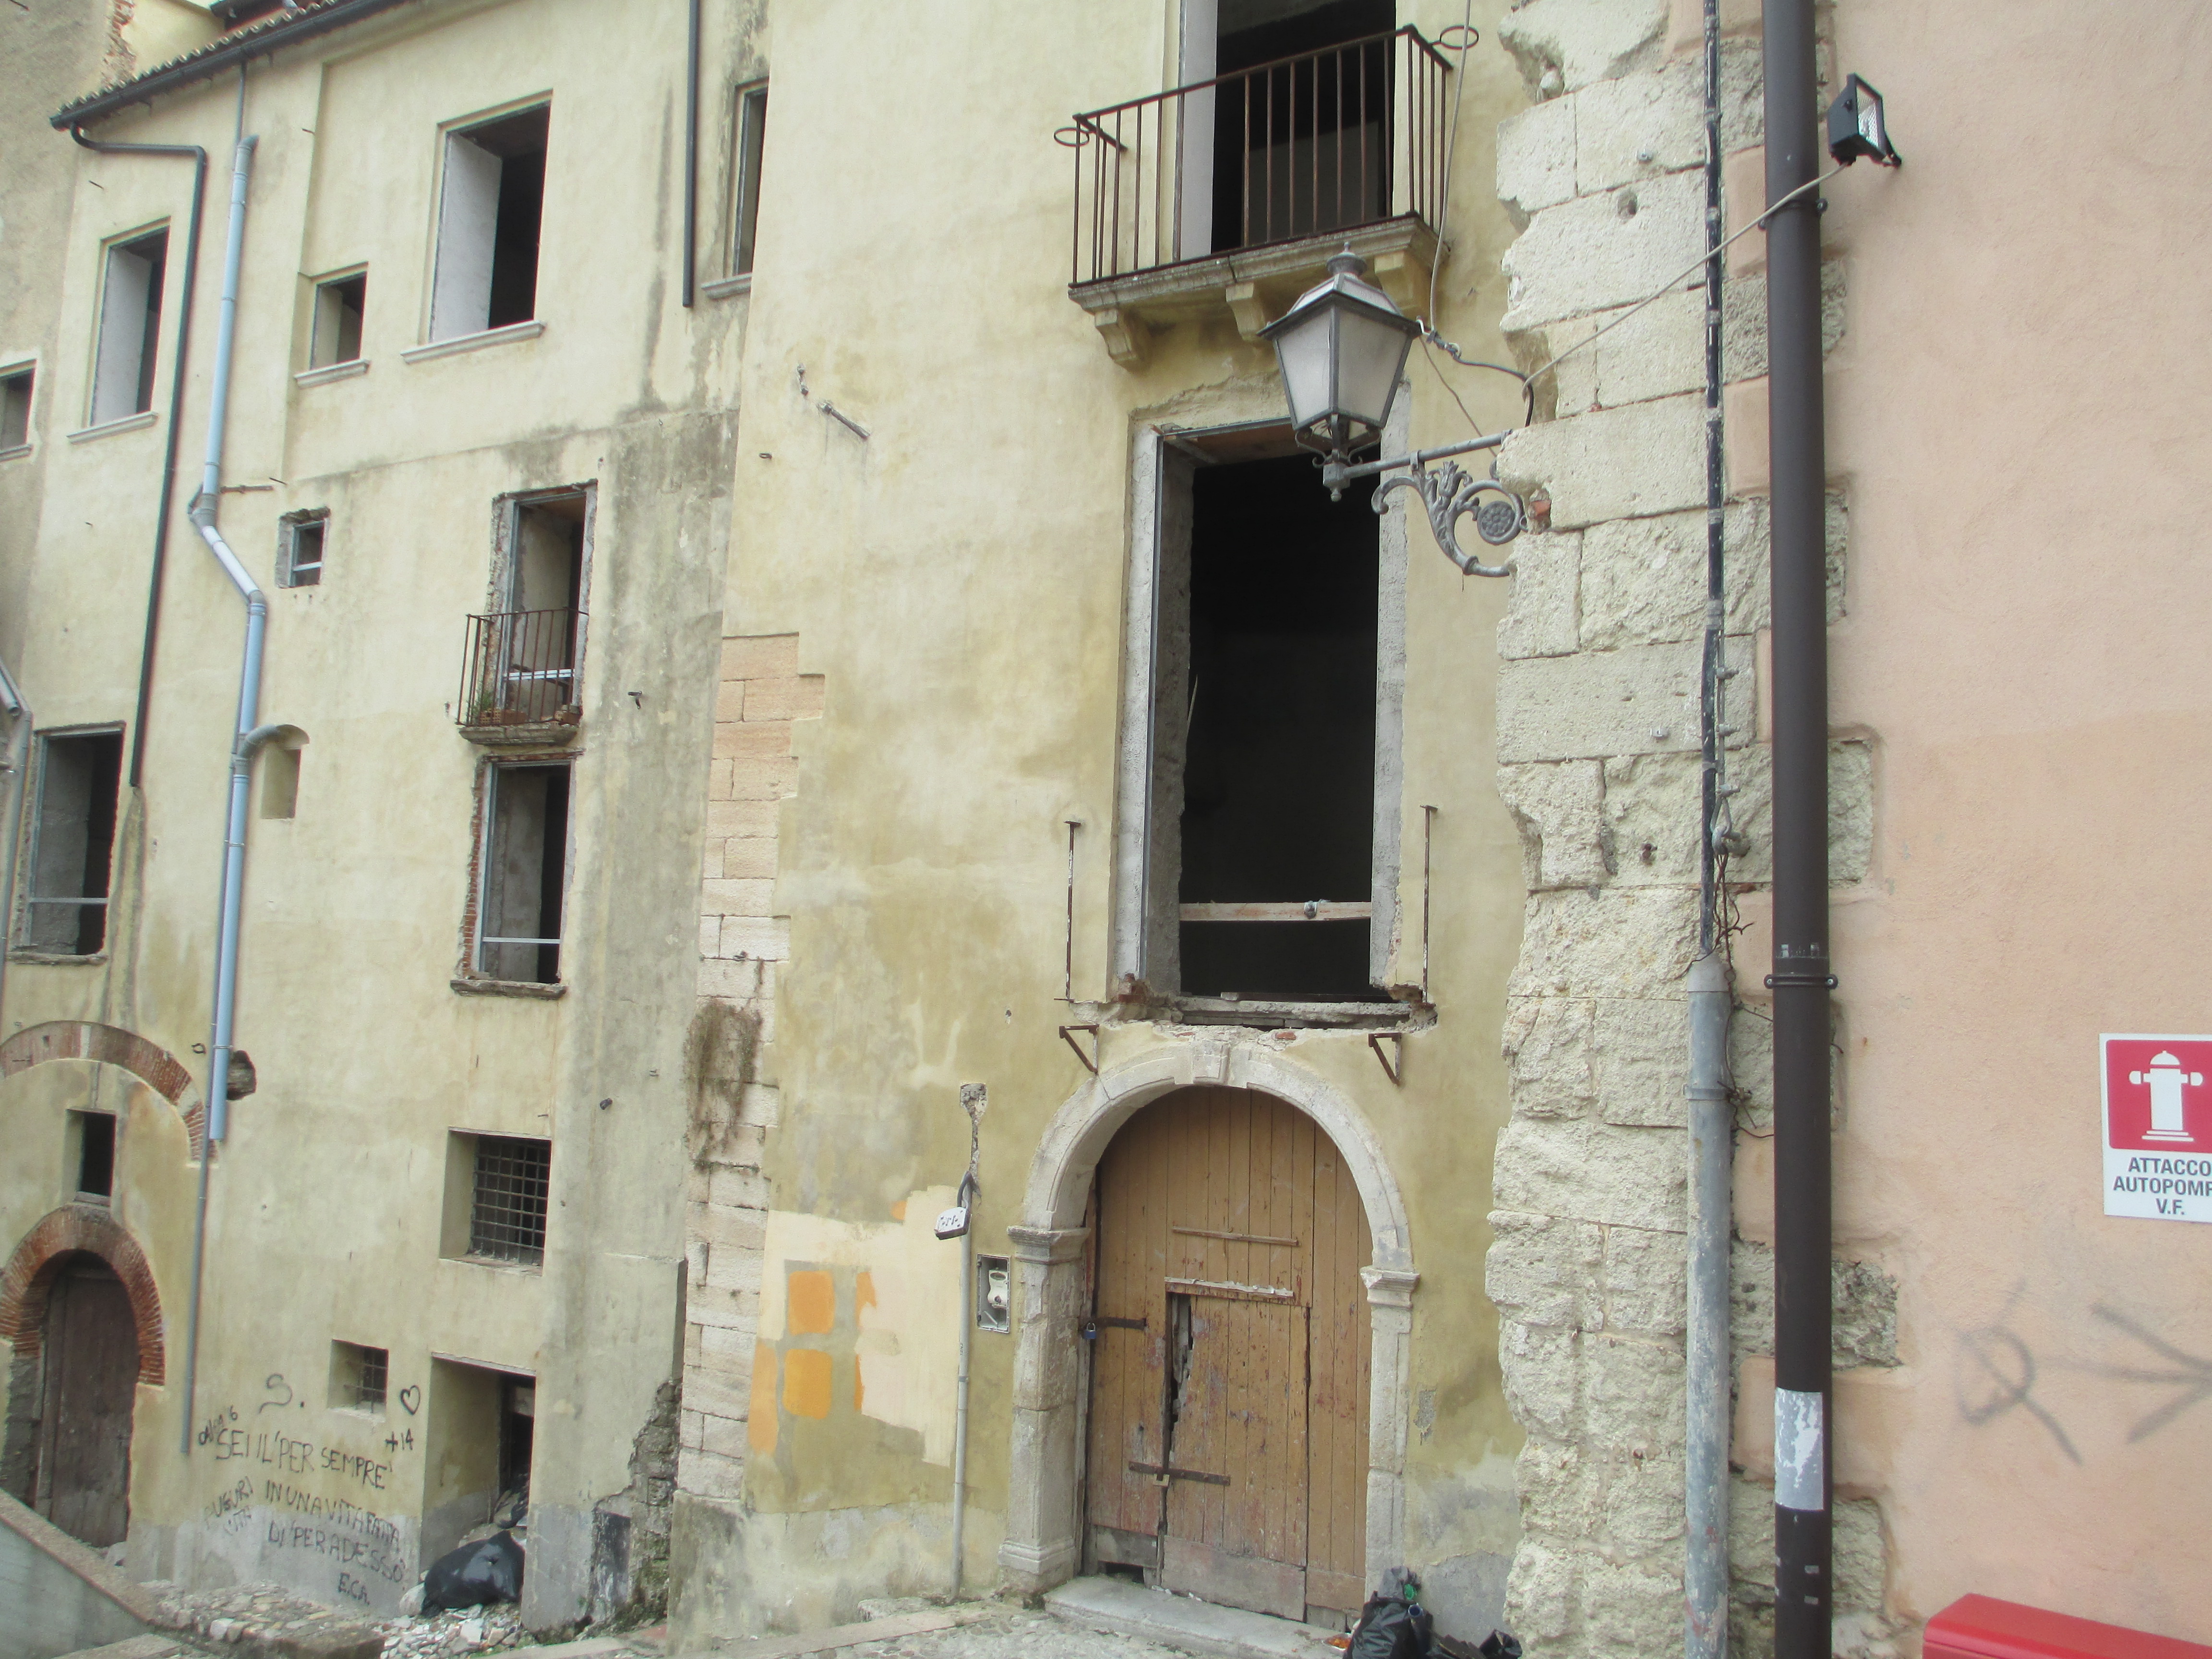 Palazzo Barracco (palazzo, nobiliare) - Cosenza (CS) 